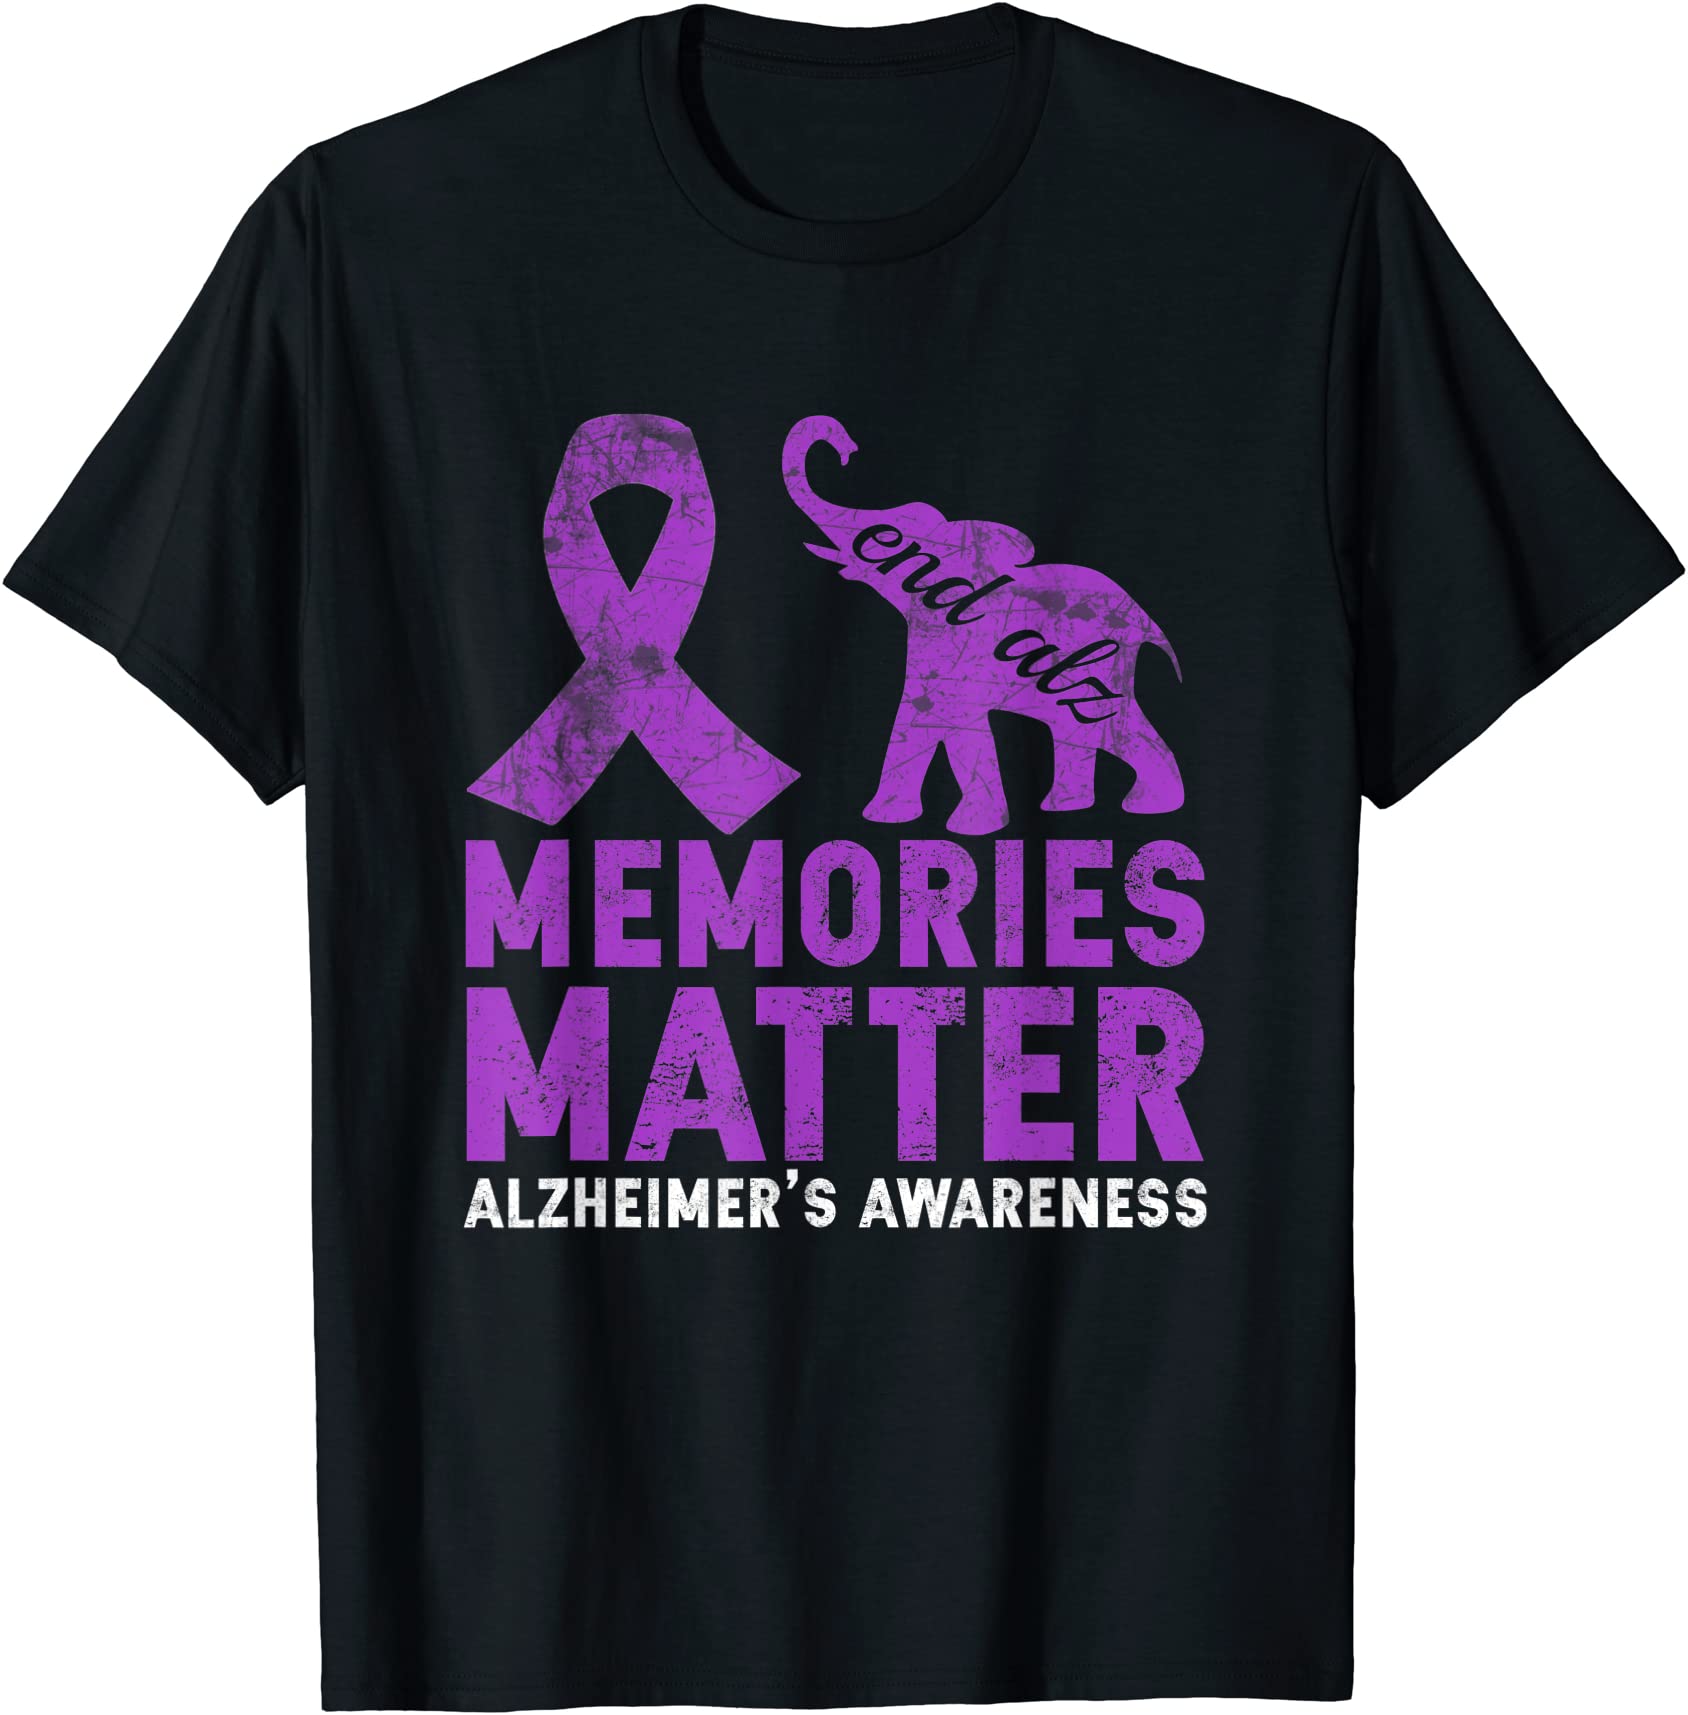 memories matter alzheimer shirt purple elephant t shirt men - Buy t ...